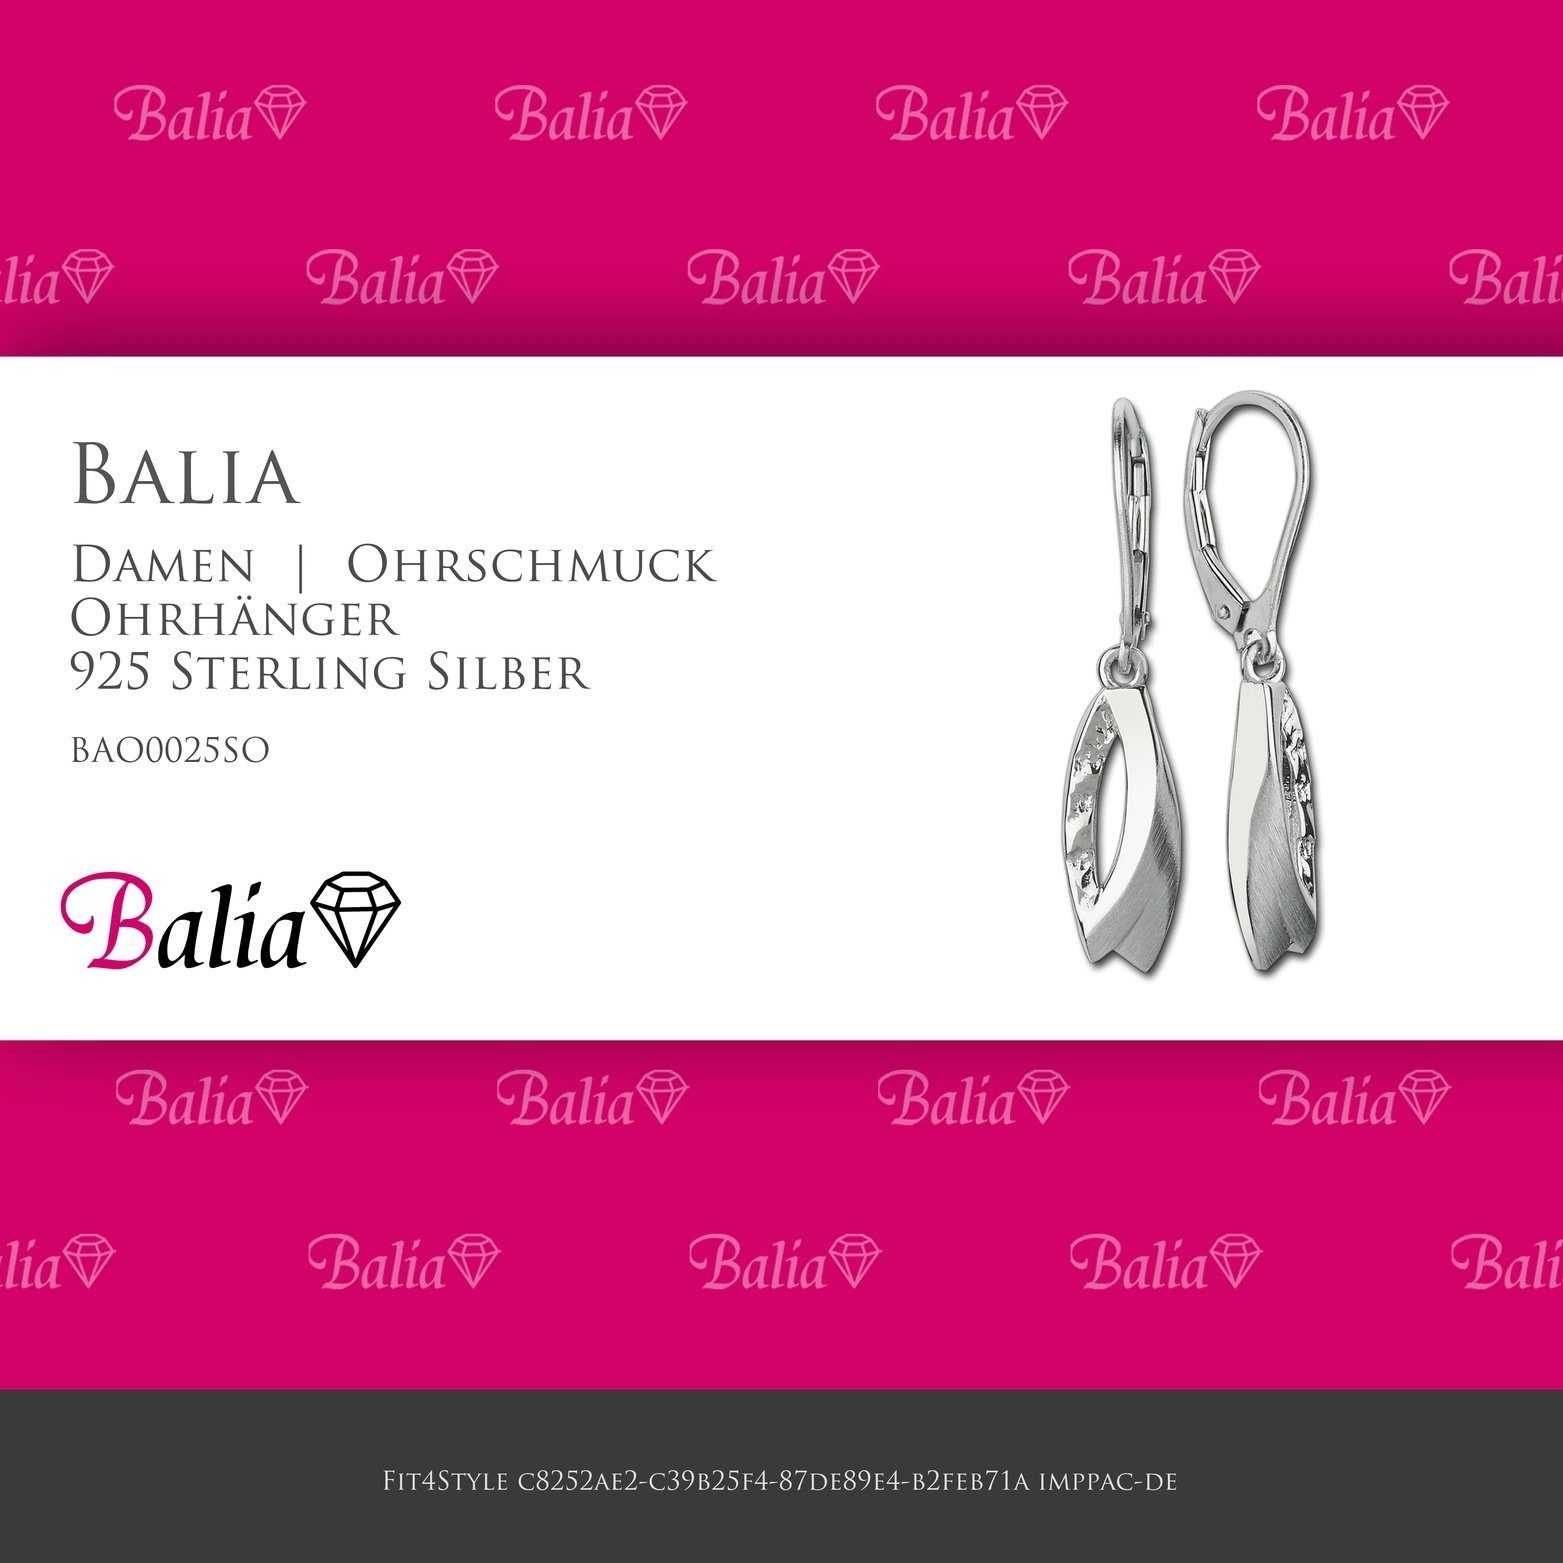 Balia Paar Ohrhänger Balia Damen 925 (Ohrhänger), Ohrhänger Blätter 3,5cm ca. Länge Damen poliert Silber, matt aus Sterling Ohrringe